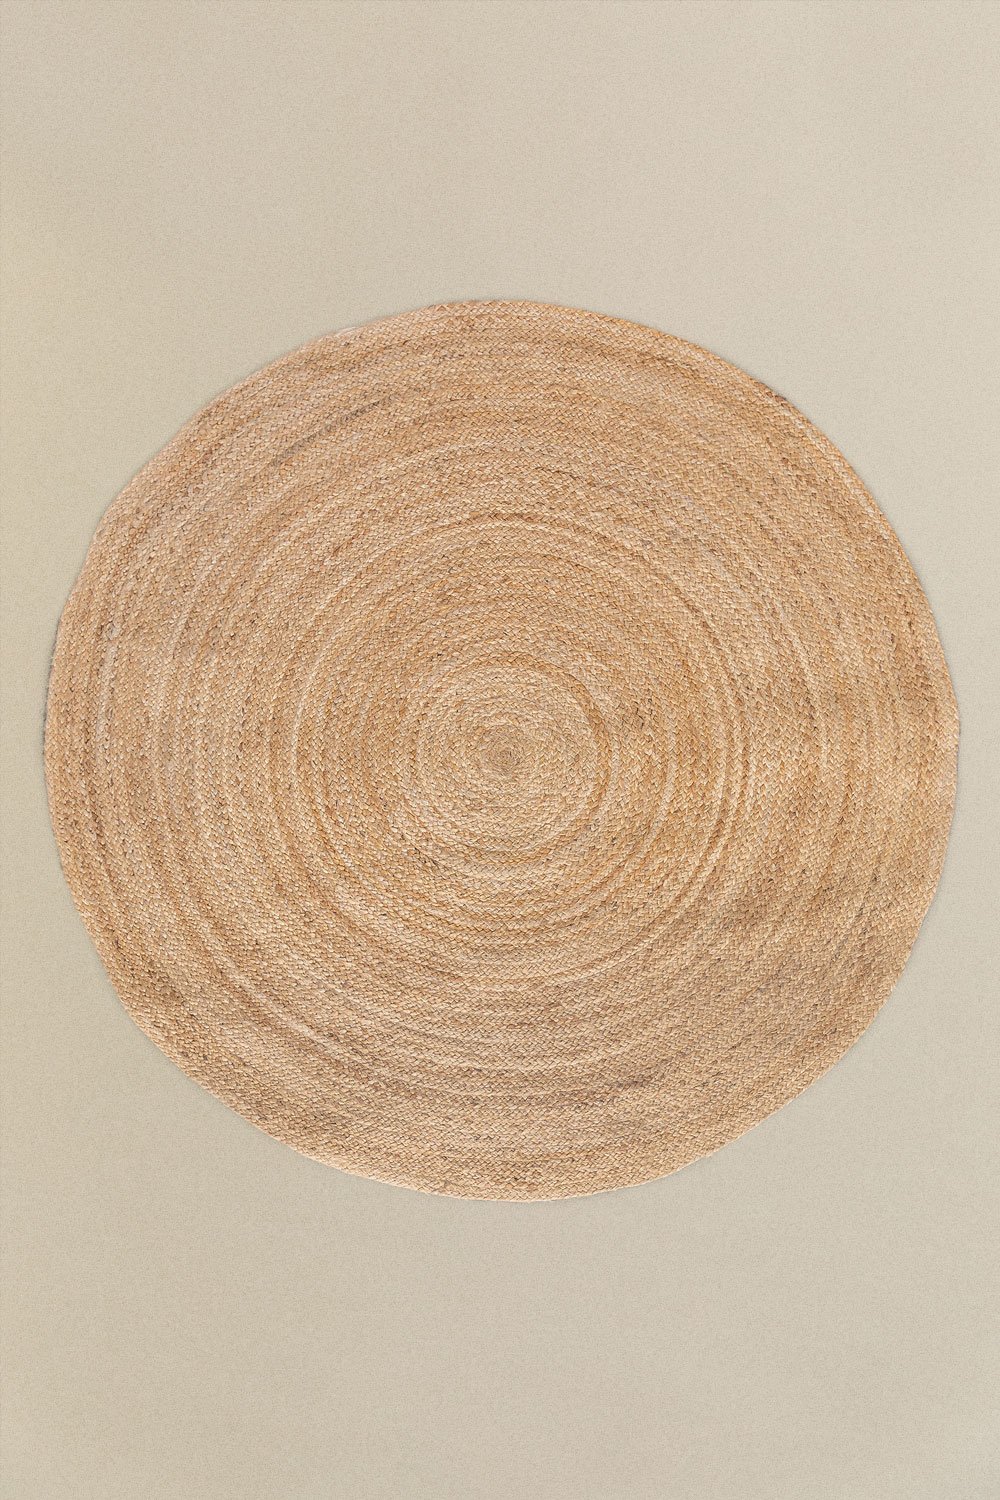 Tapete de juta redondo (Ø145 cm) Neferet, imagem de galeria 1